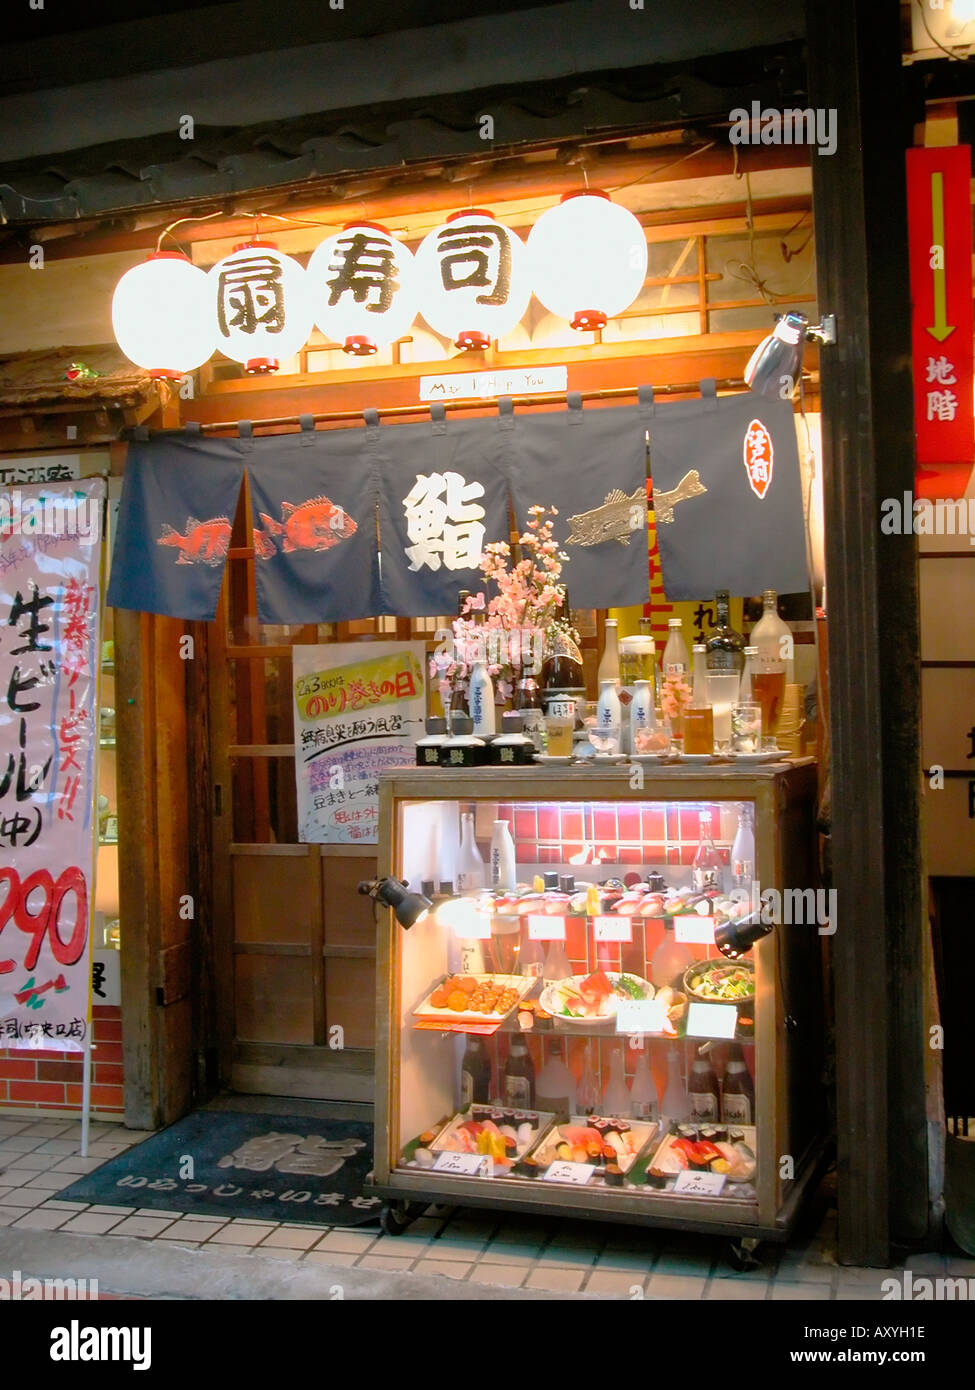 Entrance to small restaurant bar Shinjuku district Tokyo Japan Stock Photo